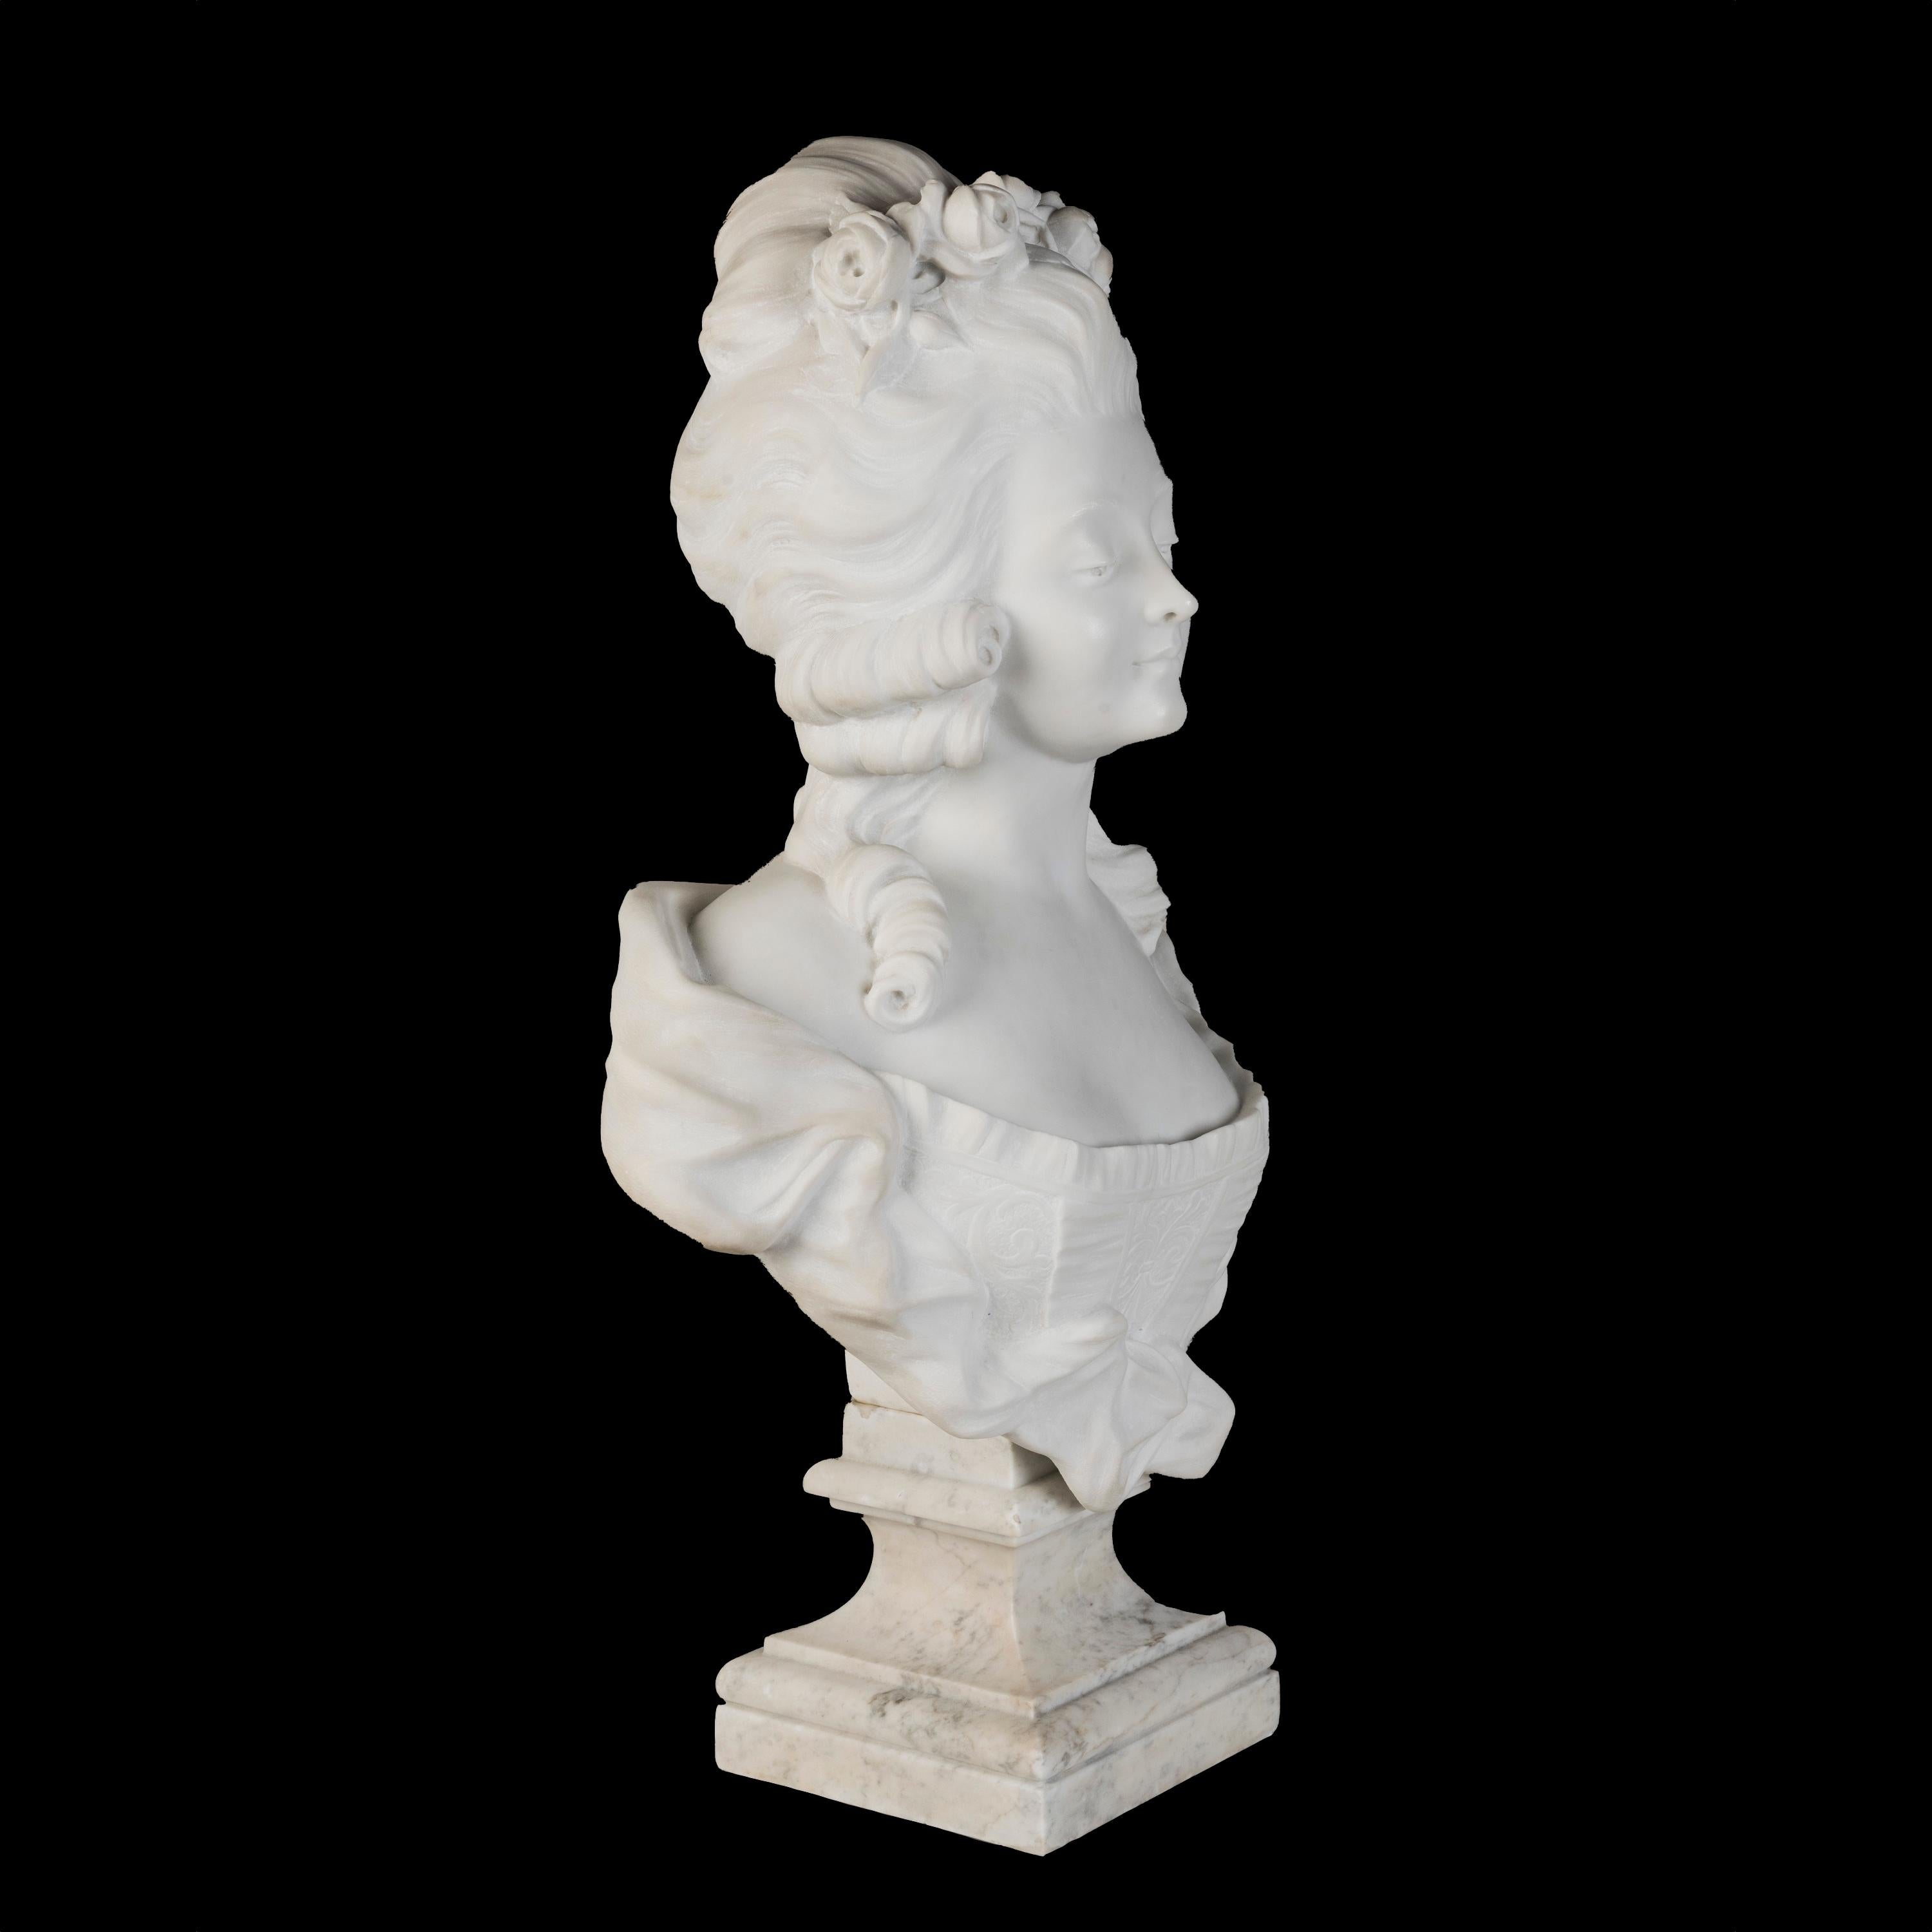 Buste de la princesse de Lamballe
La plus proche confidente de Marie-Antoinette

Sculpté dans un marbre statuaire et reposant sur un socle rectangulaire de Carrare, le portrait en buste de la princesse Marie-Louise Thérèse de Savoy-Carignan, plus